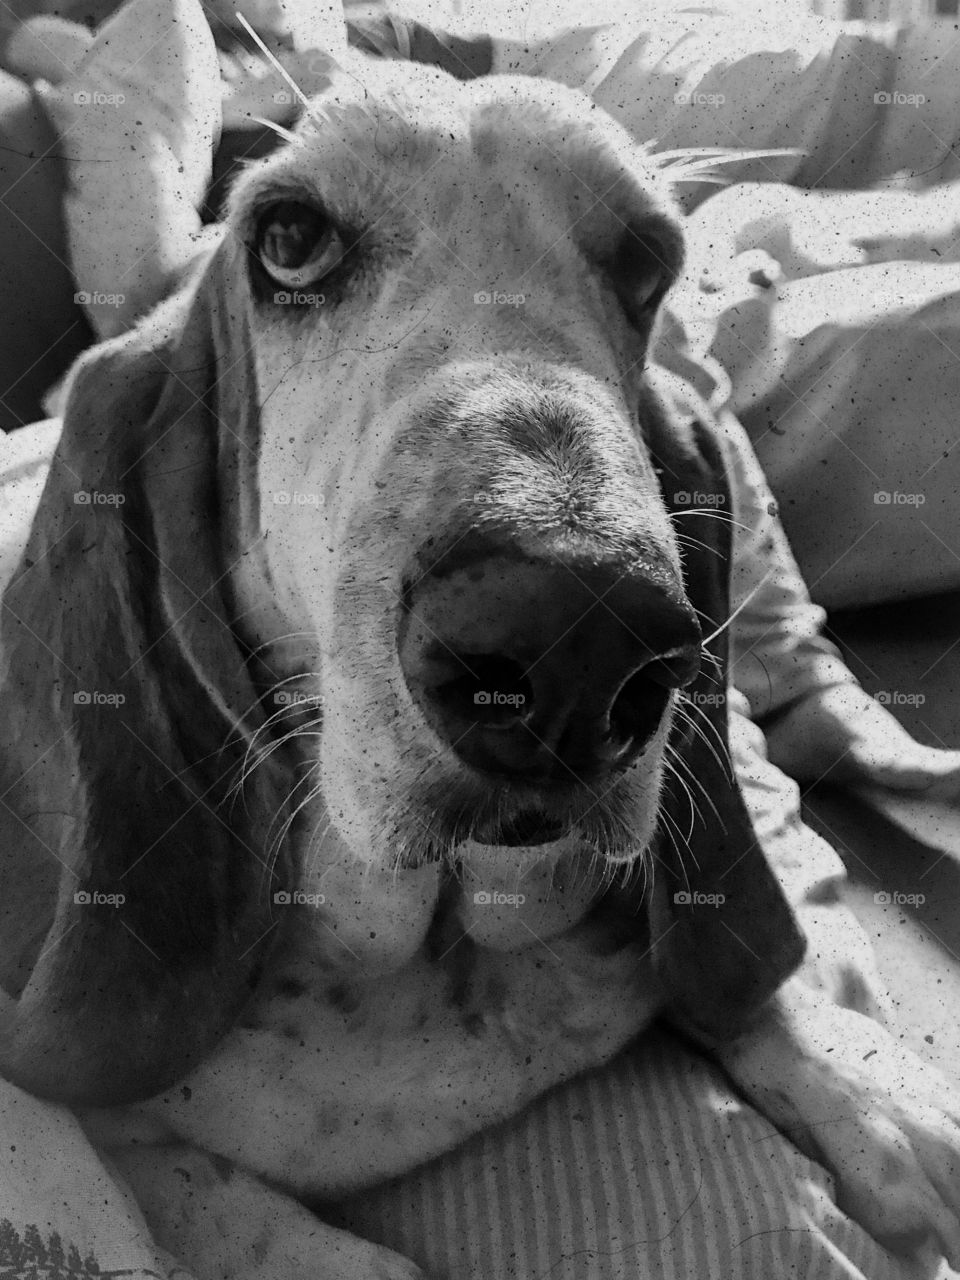 William the basset hound